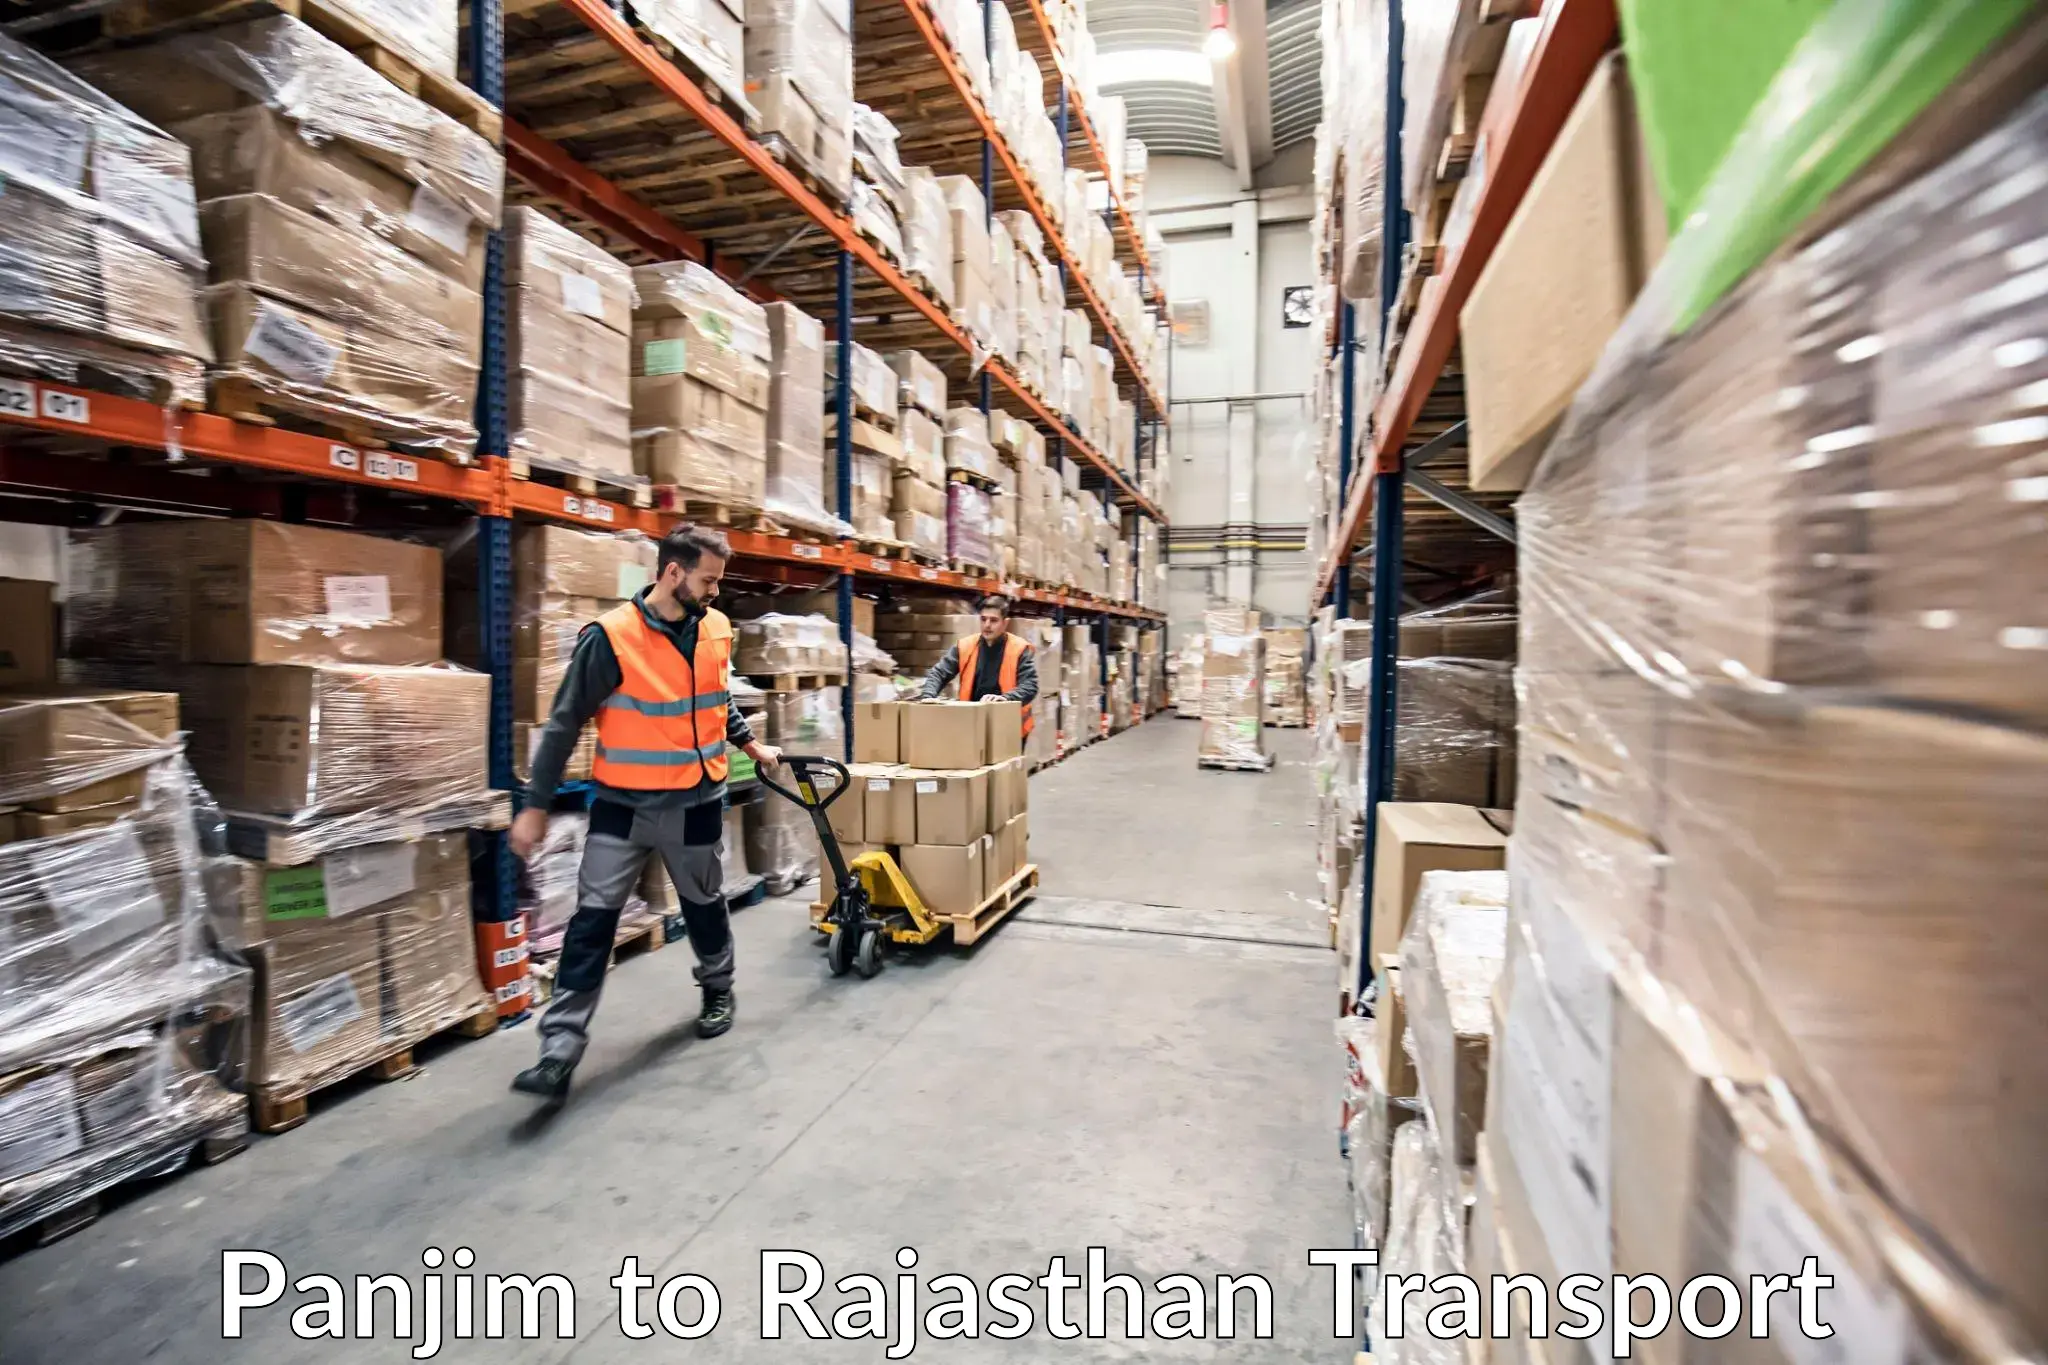 Part load transport service in India Panjim to Bijainagar